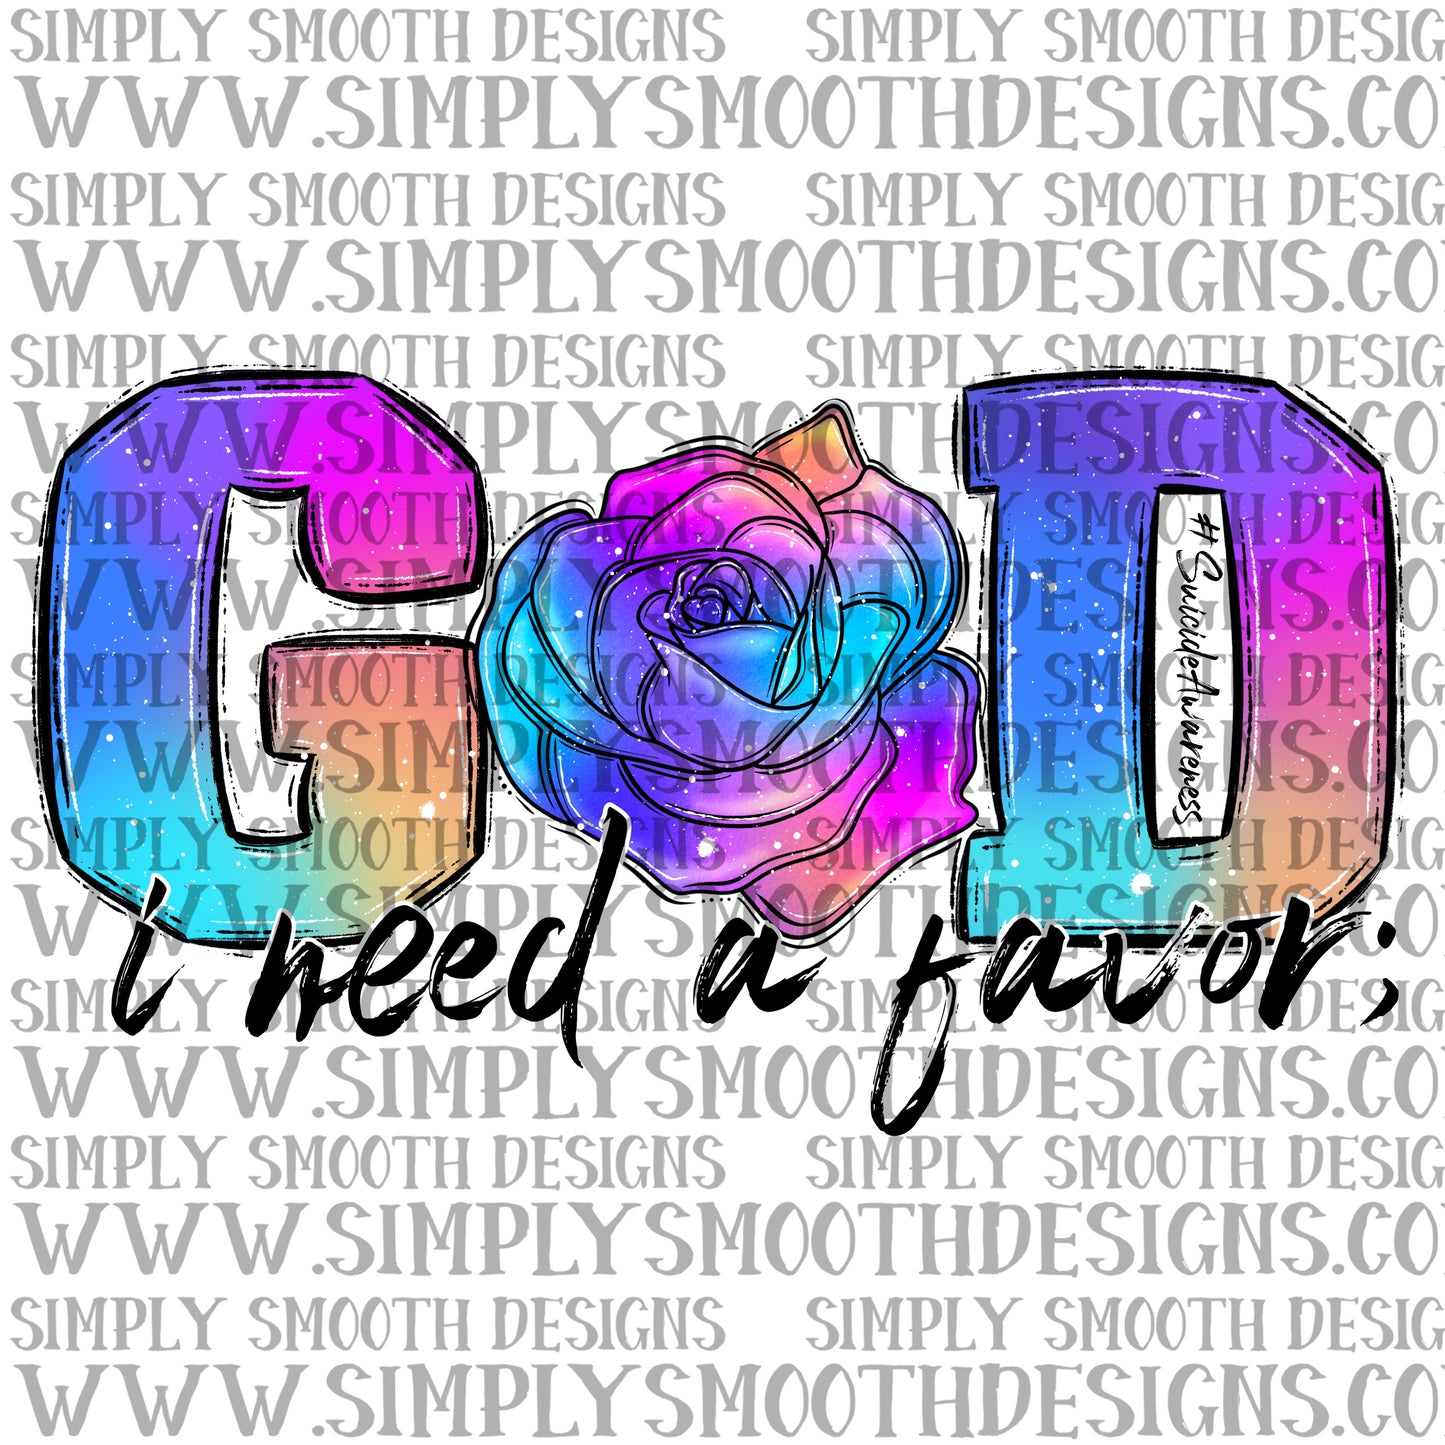 God I need a favor